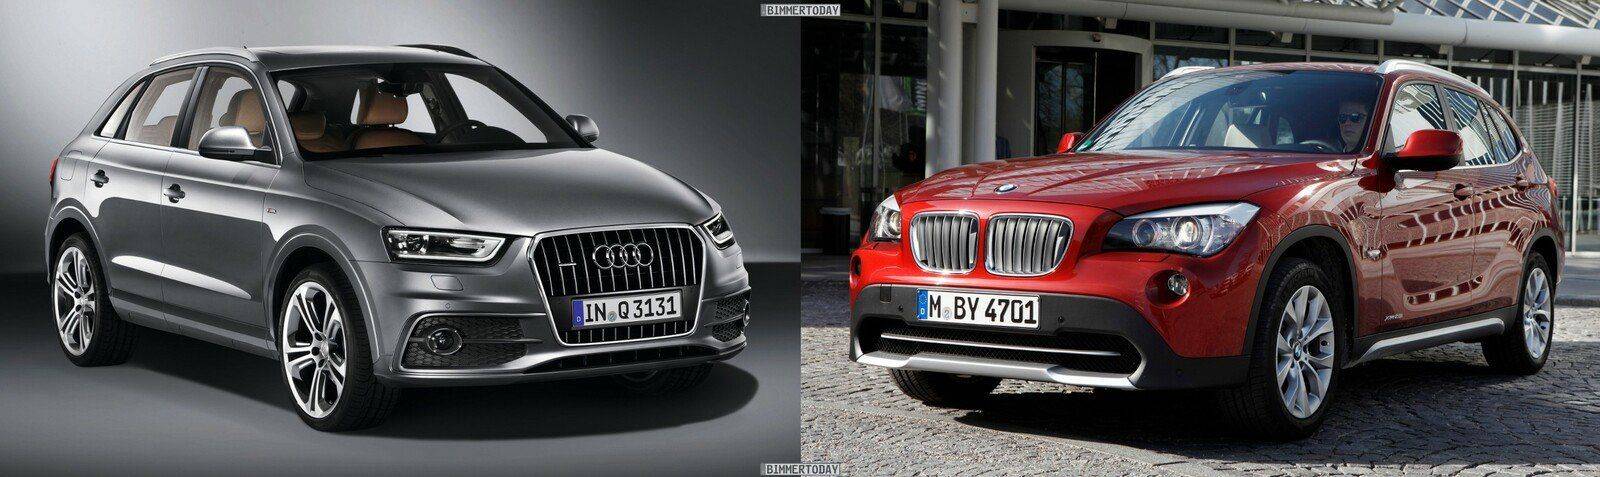 Bildvergleich-Audi-Q3-BMW-X1-Front1.jpg